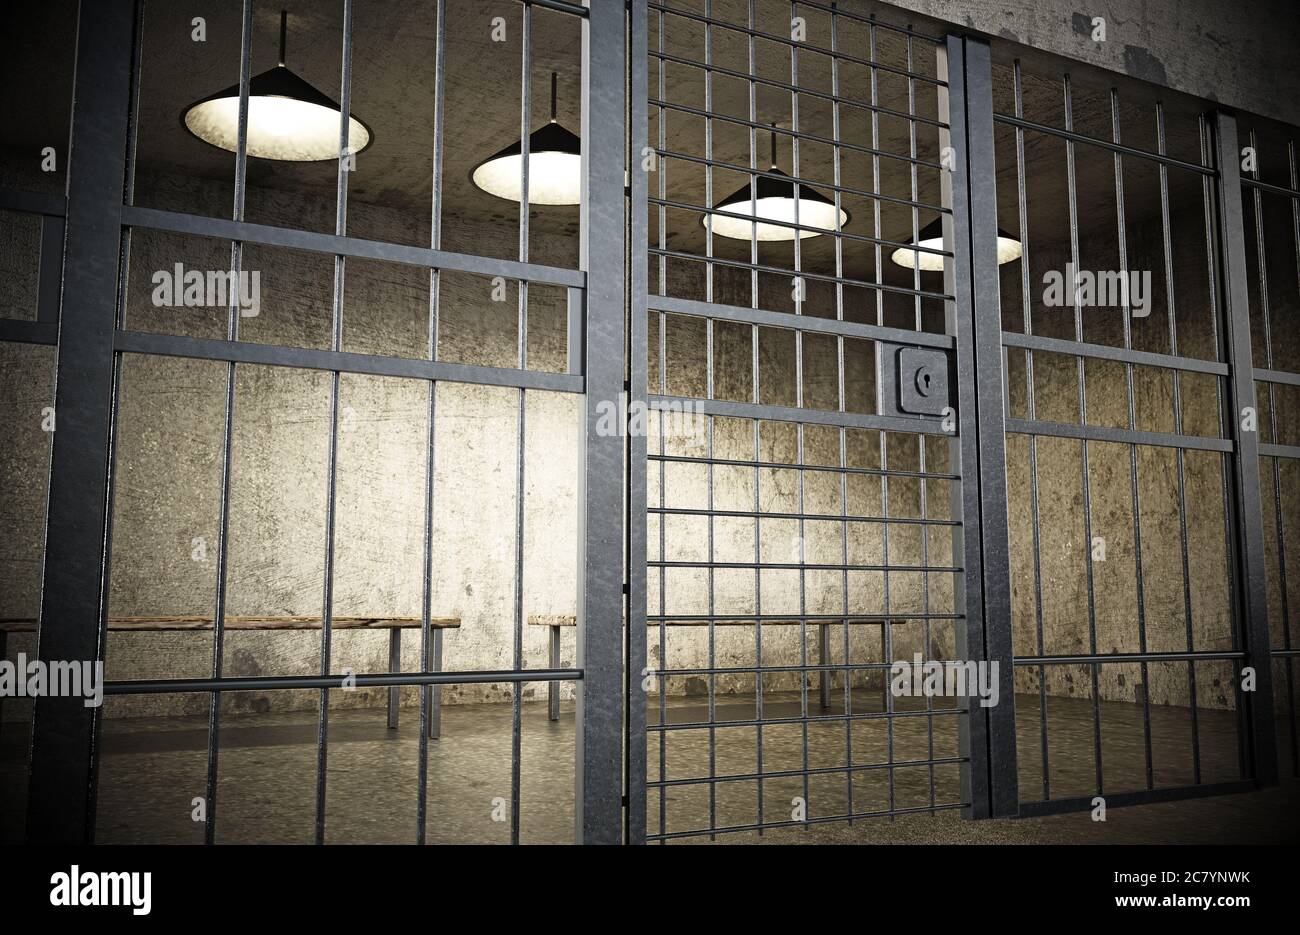 Cellule de prison avec porte fermée et vieux murs sales. Illustration 3D. Banque D'Images